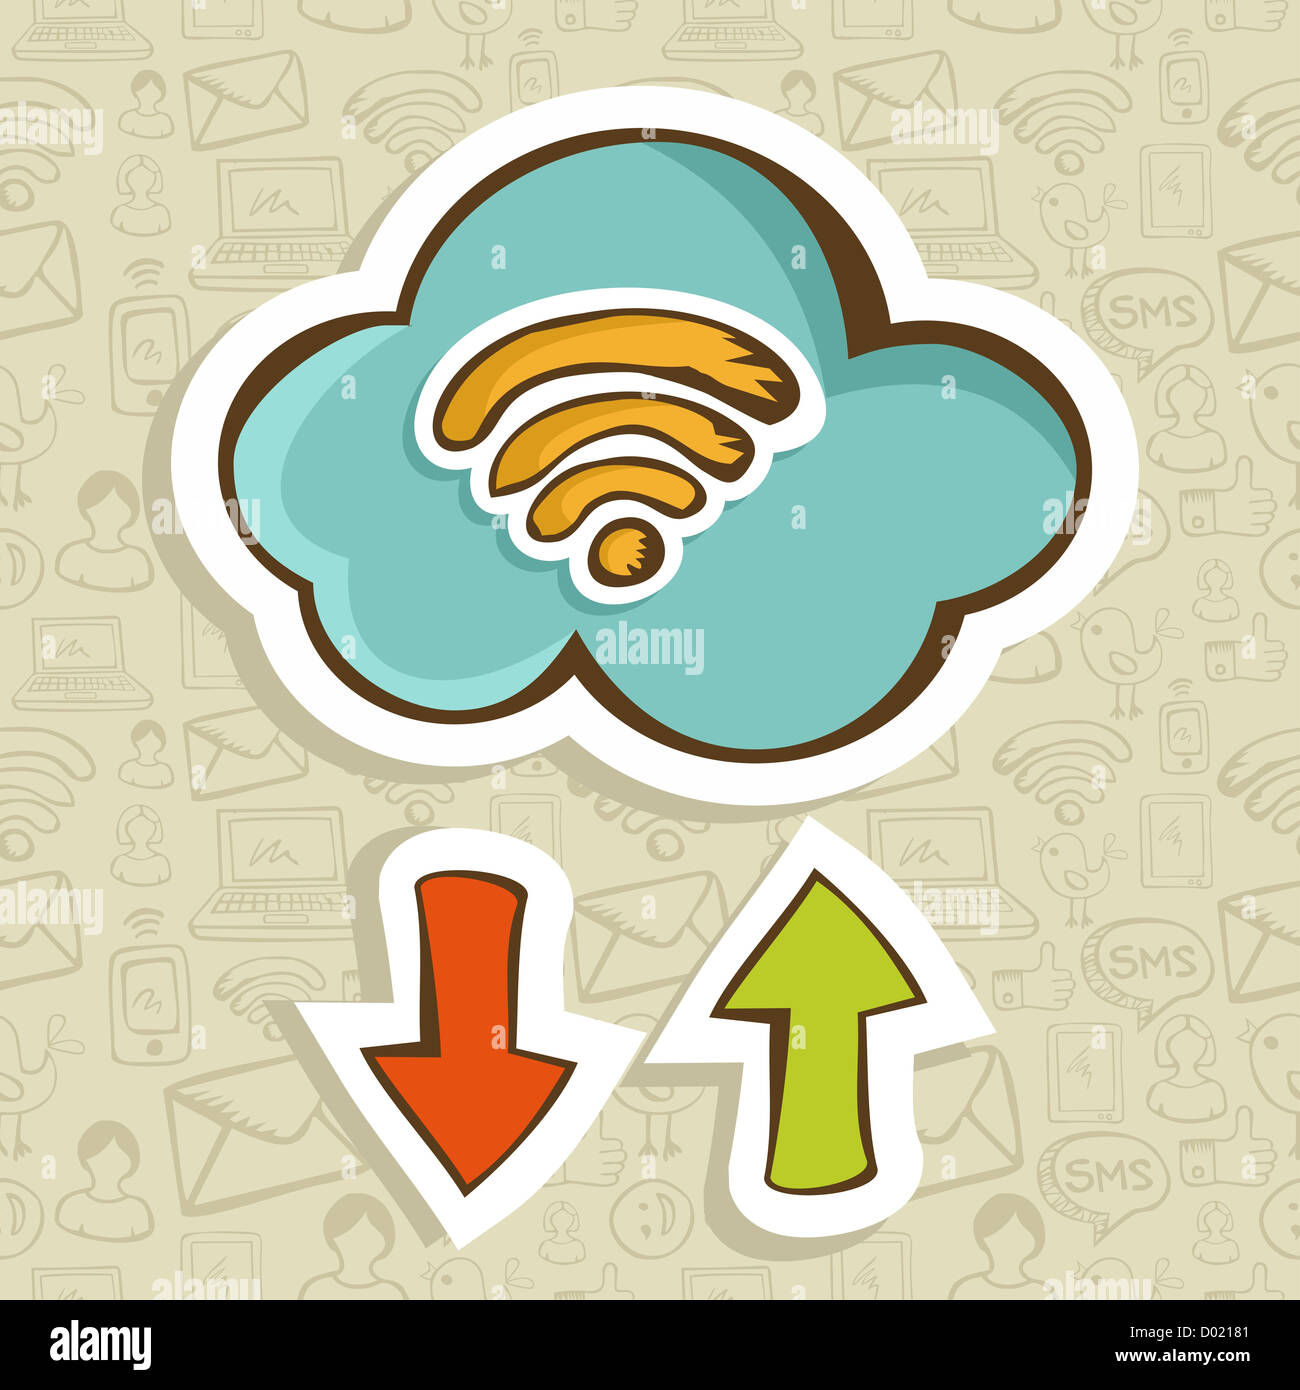 Il cloud computing cartoon icona con il download e upload di freccia. Illustrazione Vettoriale stratificata per una facile manipolazione e colorazione personalizzata. Foto Stock